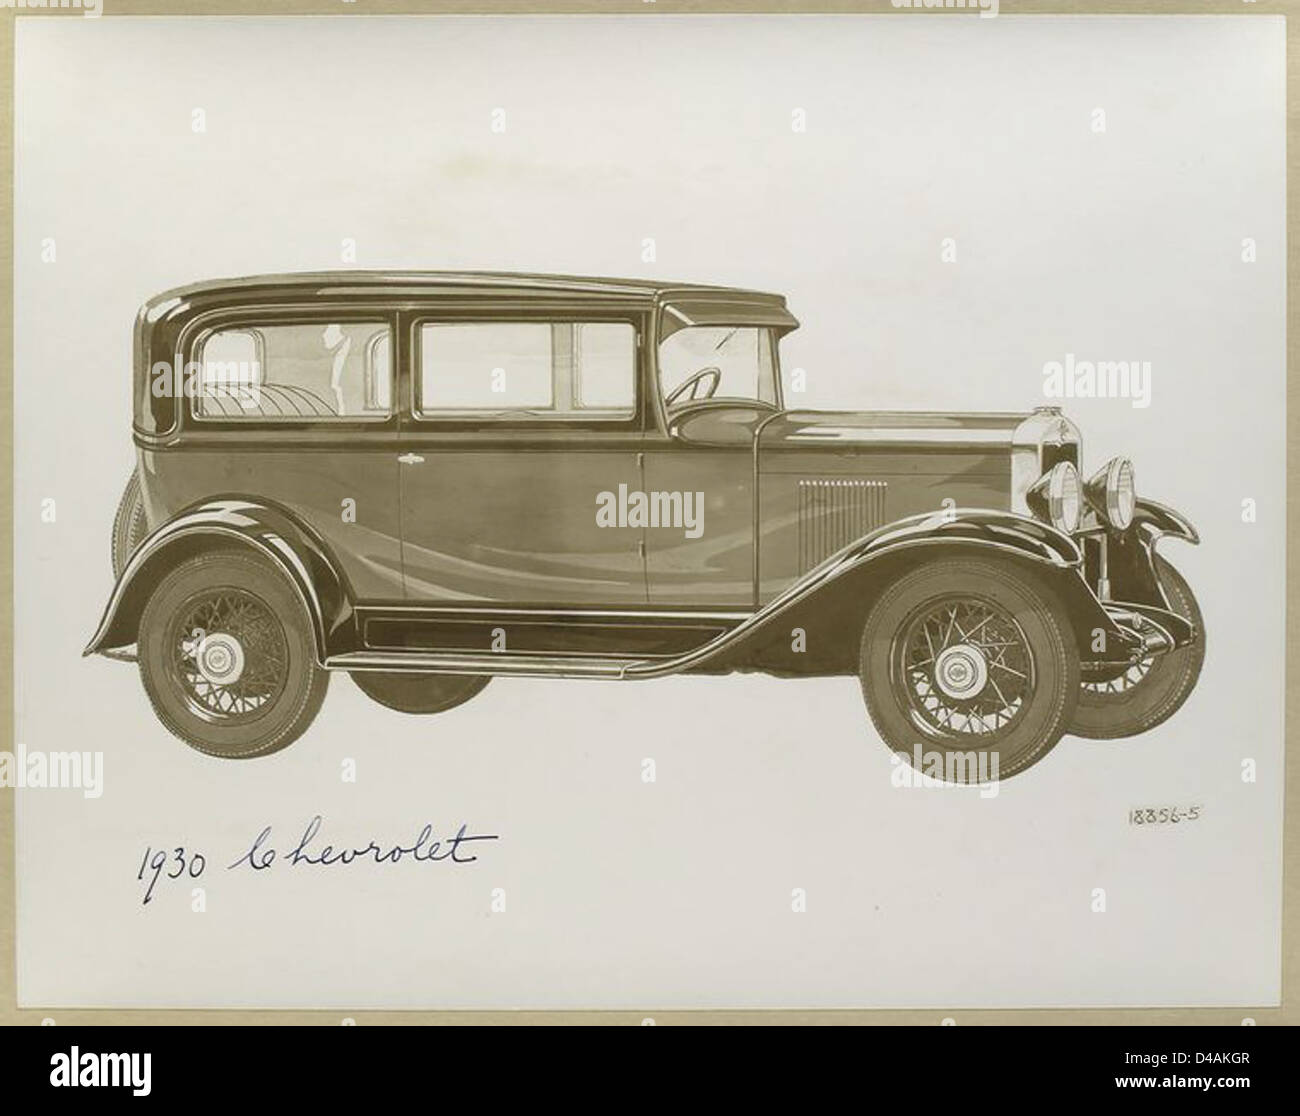 1930 Chevrolet. Stock Photo